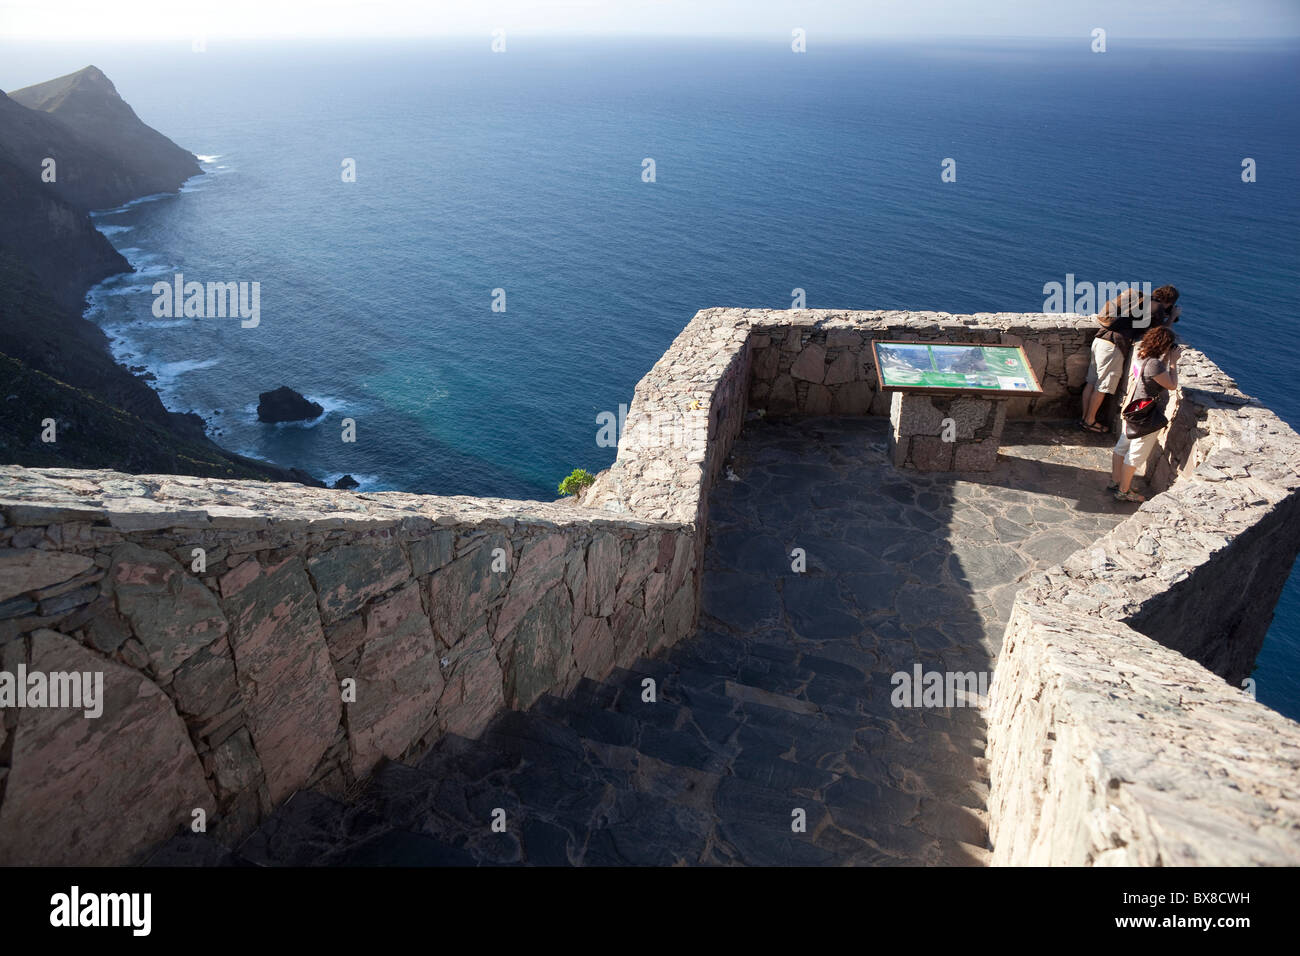 Espagne, canaries, Gran Canaria, côte ouest, point de vue avec les touristes, la mer et le ciel Banque D'Images